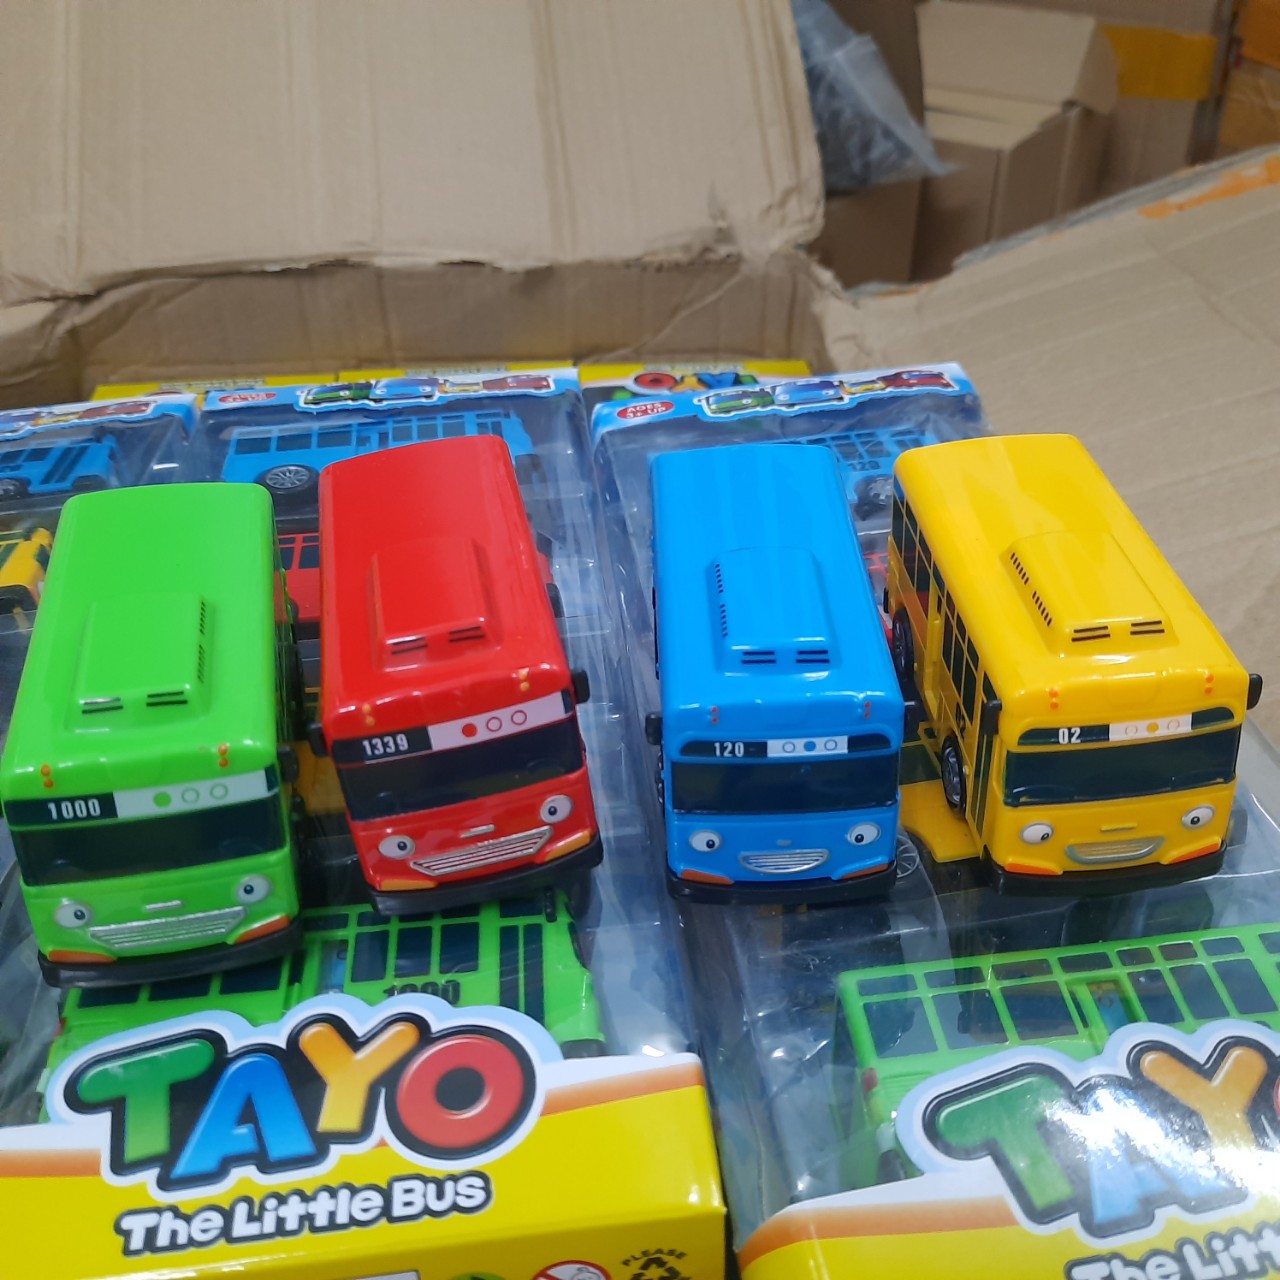 Bộ 4 xe Bus Tayo gồm 4 màu khác nhau Đồ chơi trẻ em